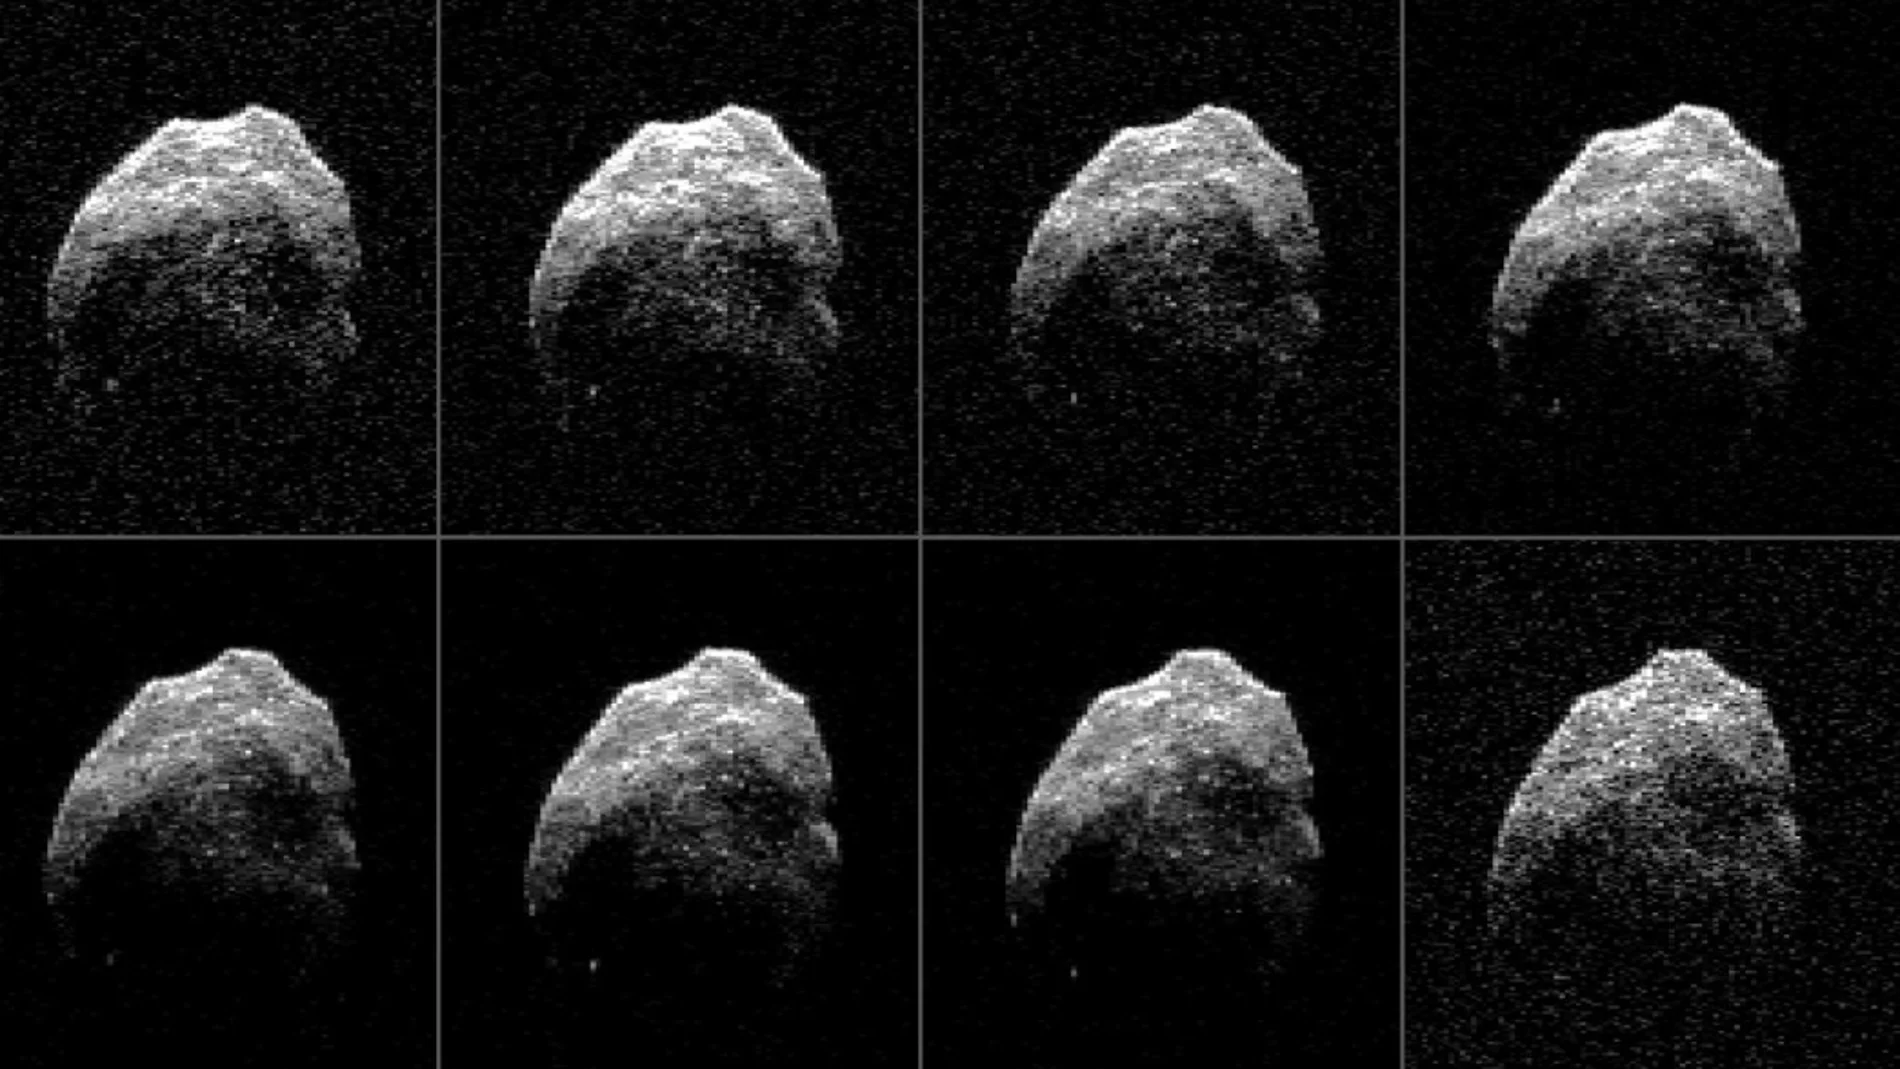 Un asteroide similar a este pasará cerca de la Tierra dentro de 10 años